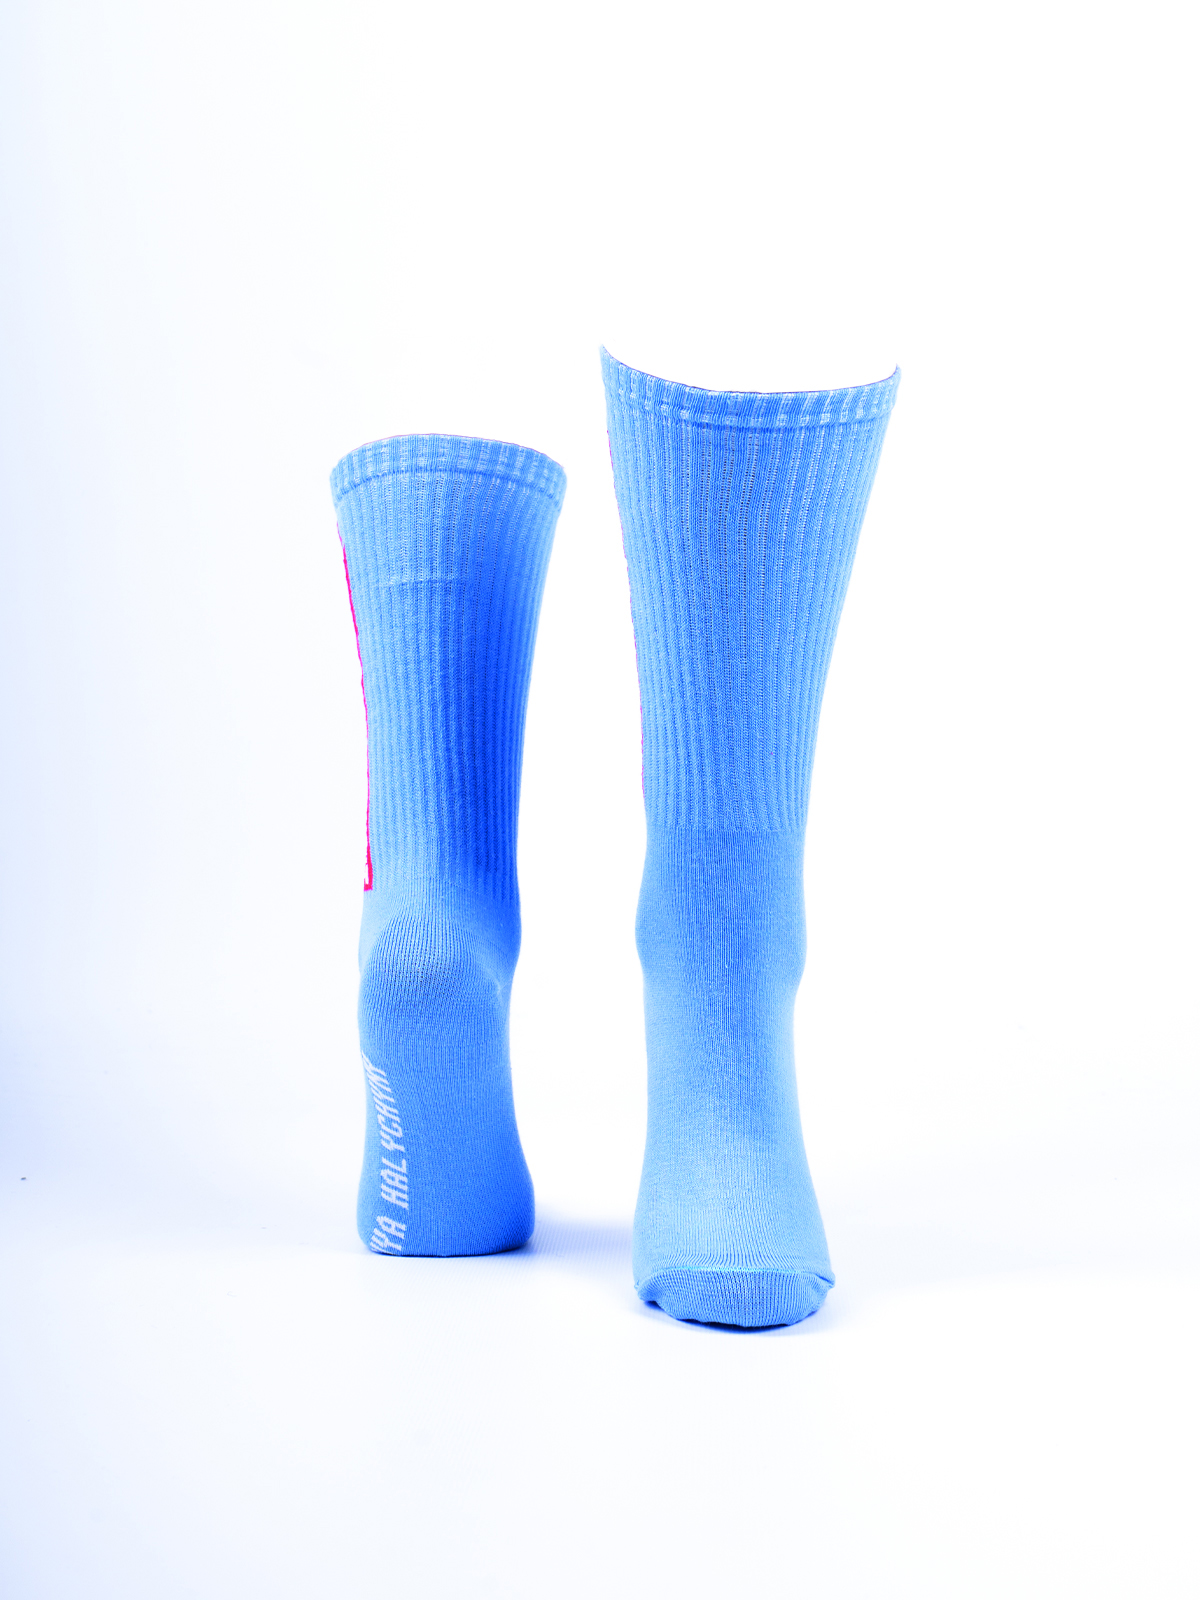 Шкарпетки Remove Before Night. Колір блакитний. Матеріал: 95% бавовна, 5% еластан  Товар обміну та поверненню не підлягає згідно закону.